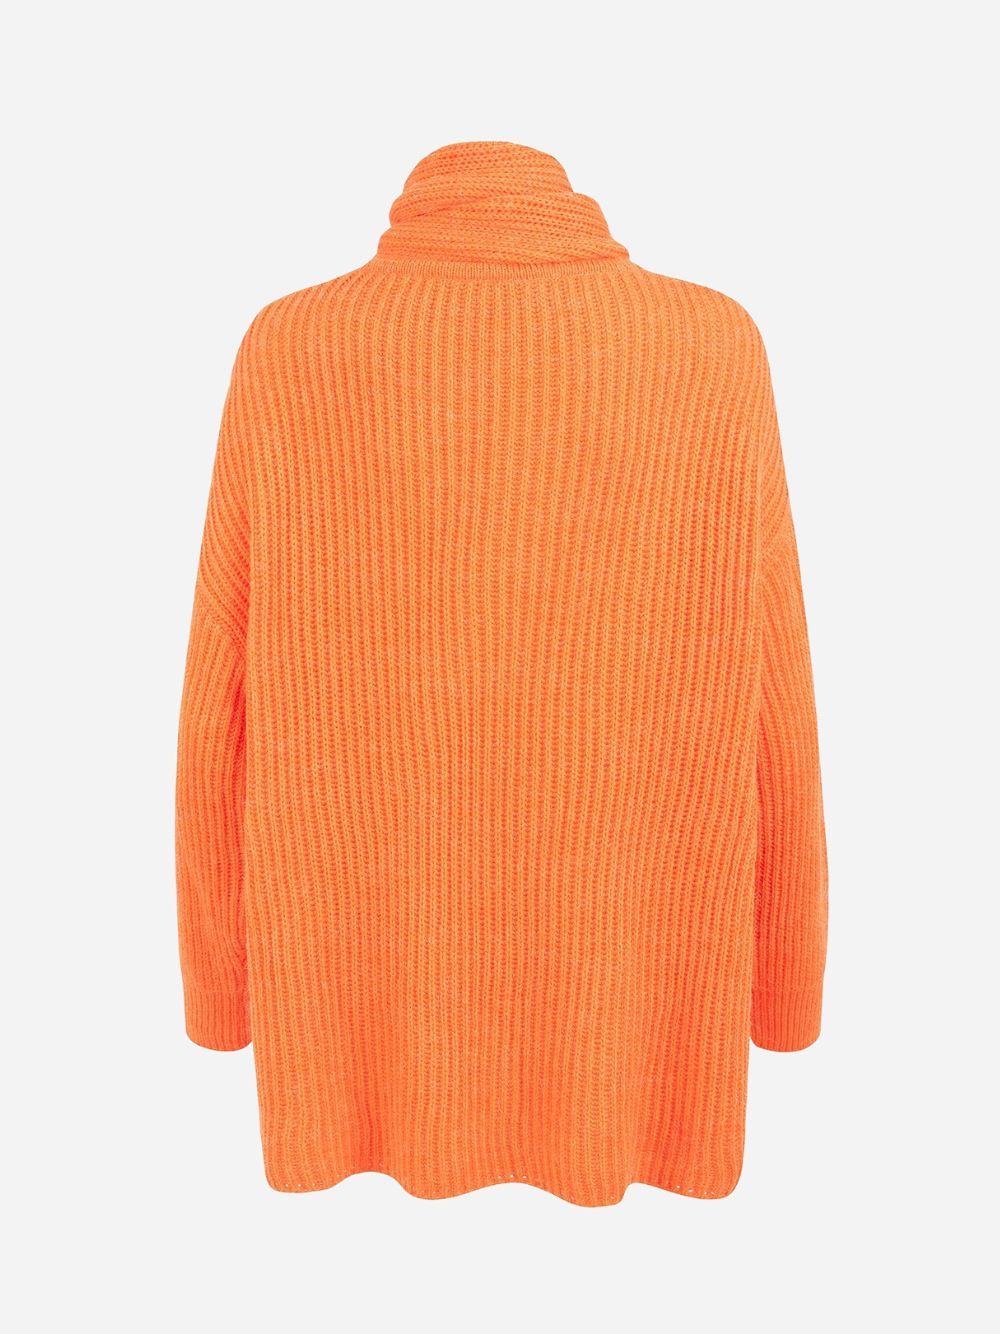 Amber Oversized Knit Orange